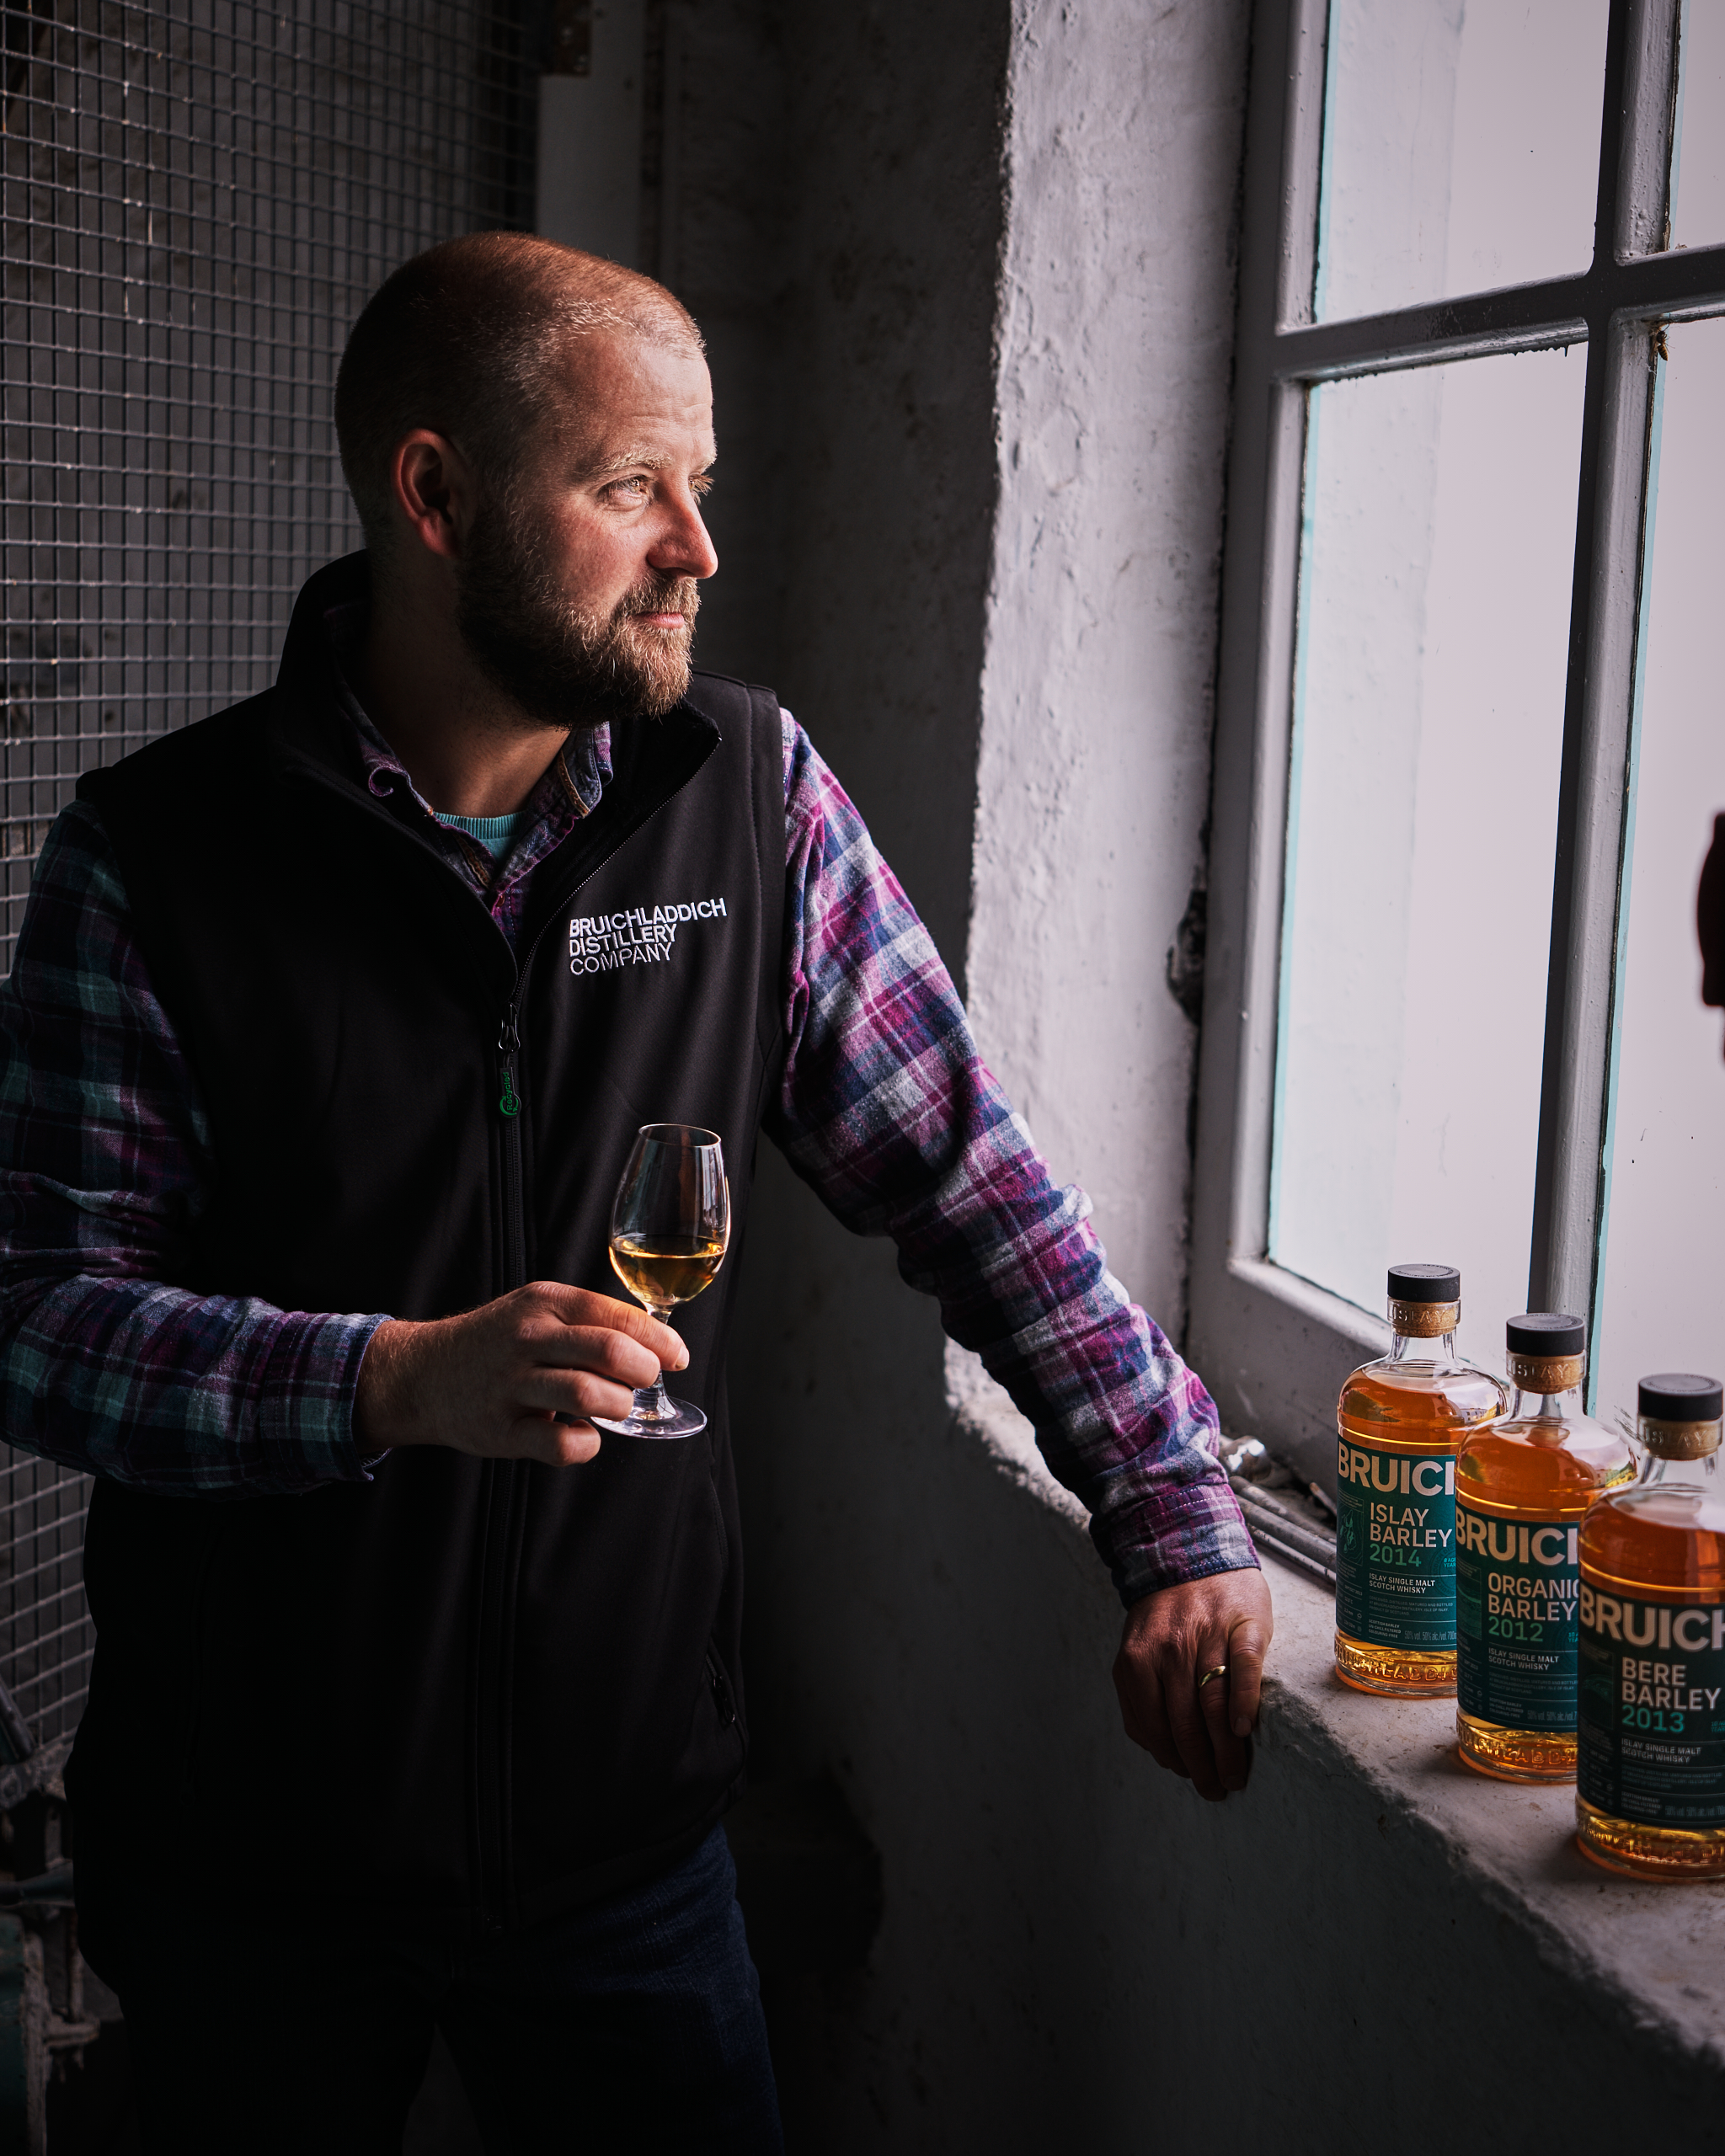 Port Charlotte Islay Barley 2014 Islay Single Malt Scotch Whisky –  Bruichladdich Distillery